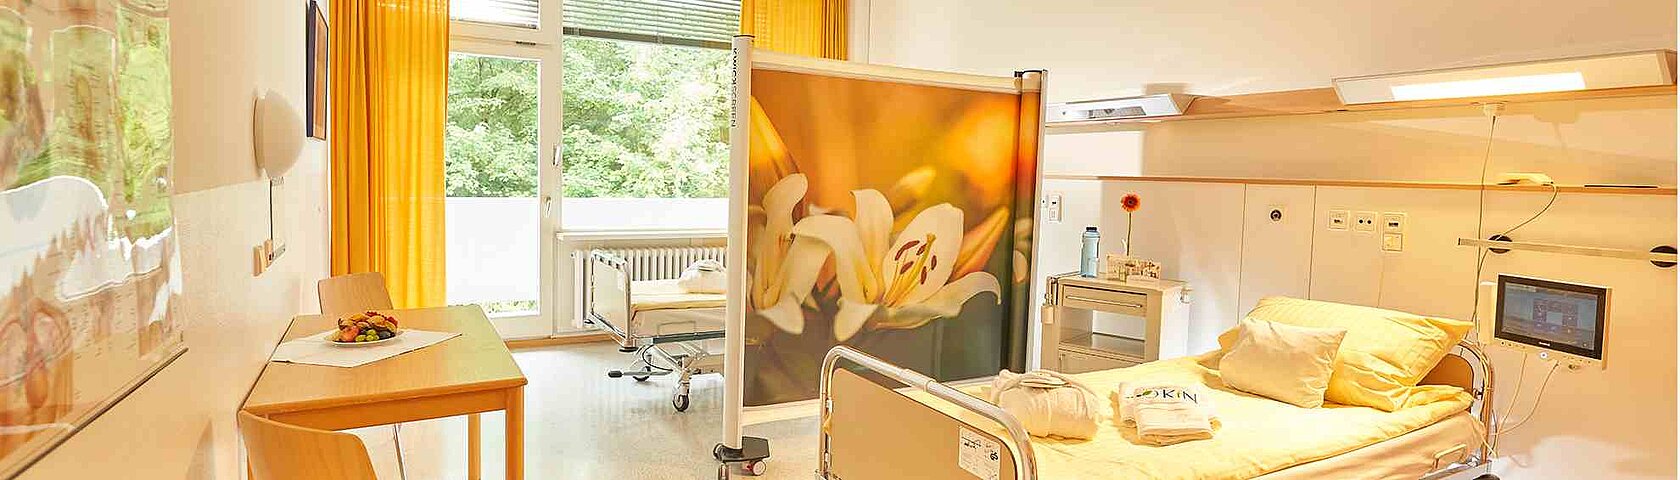 Information für Patienten und Besucher Patientenzimmer KfN München